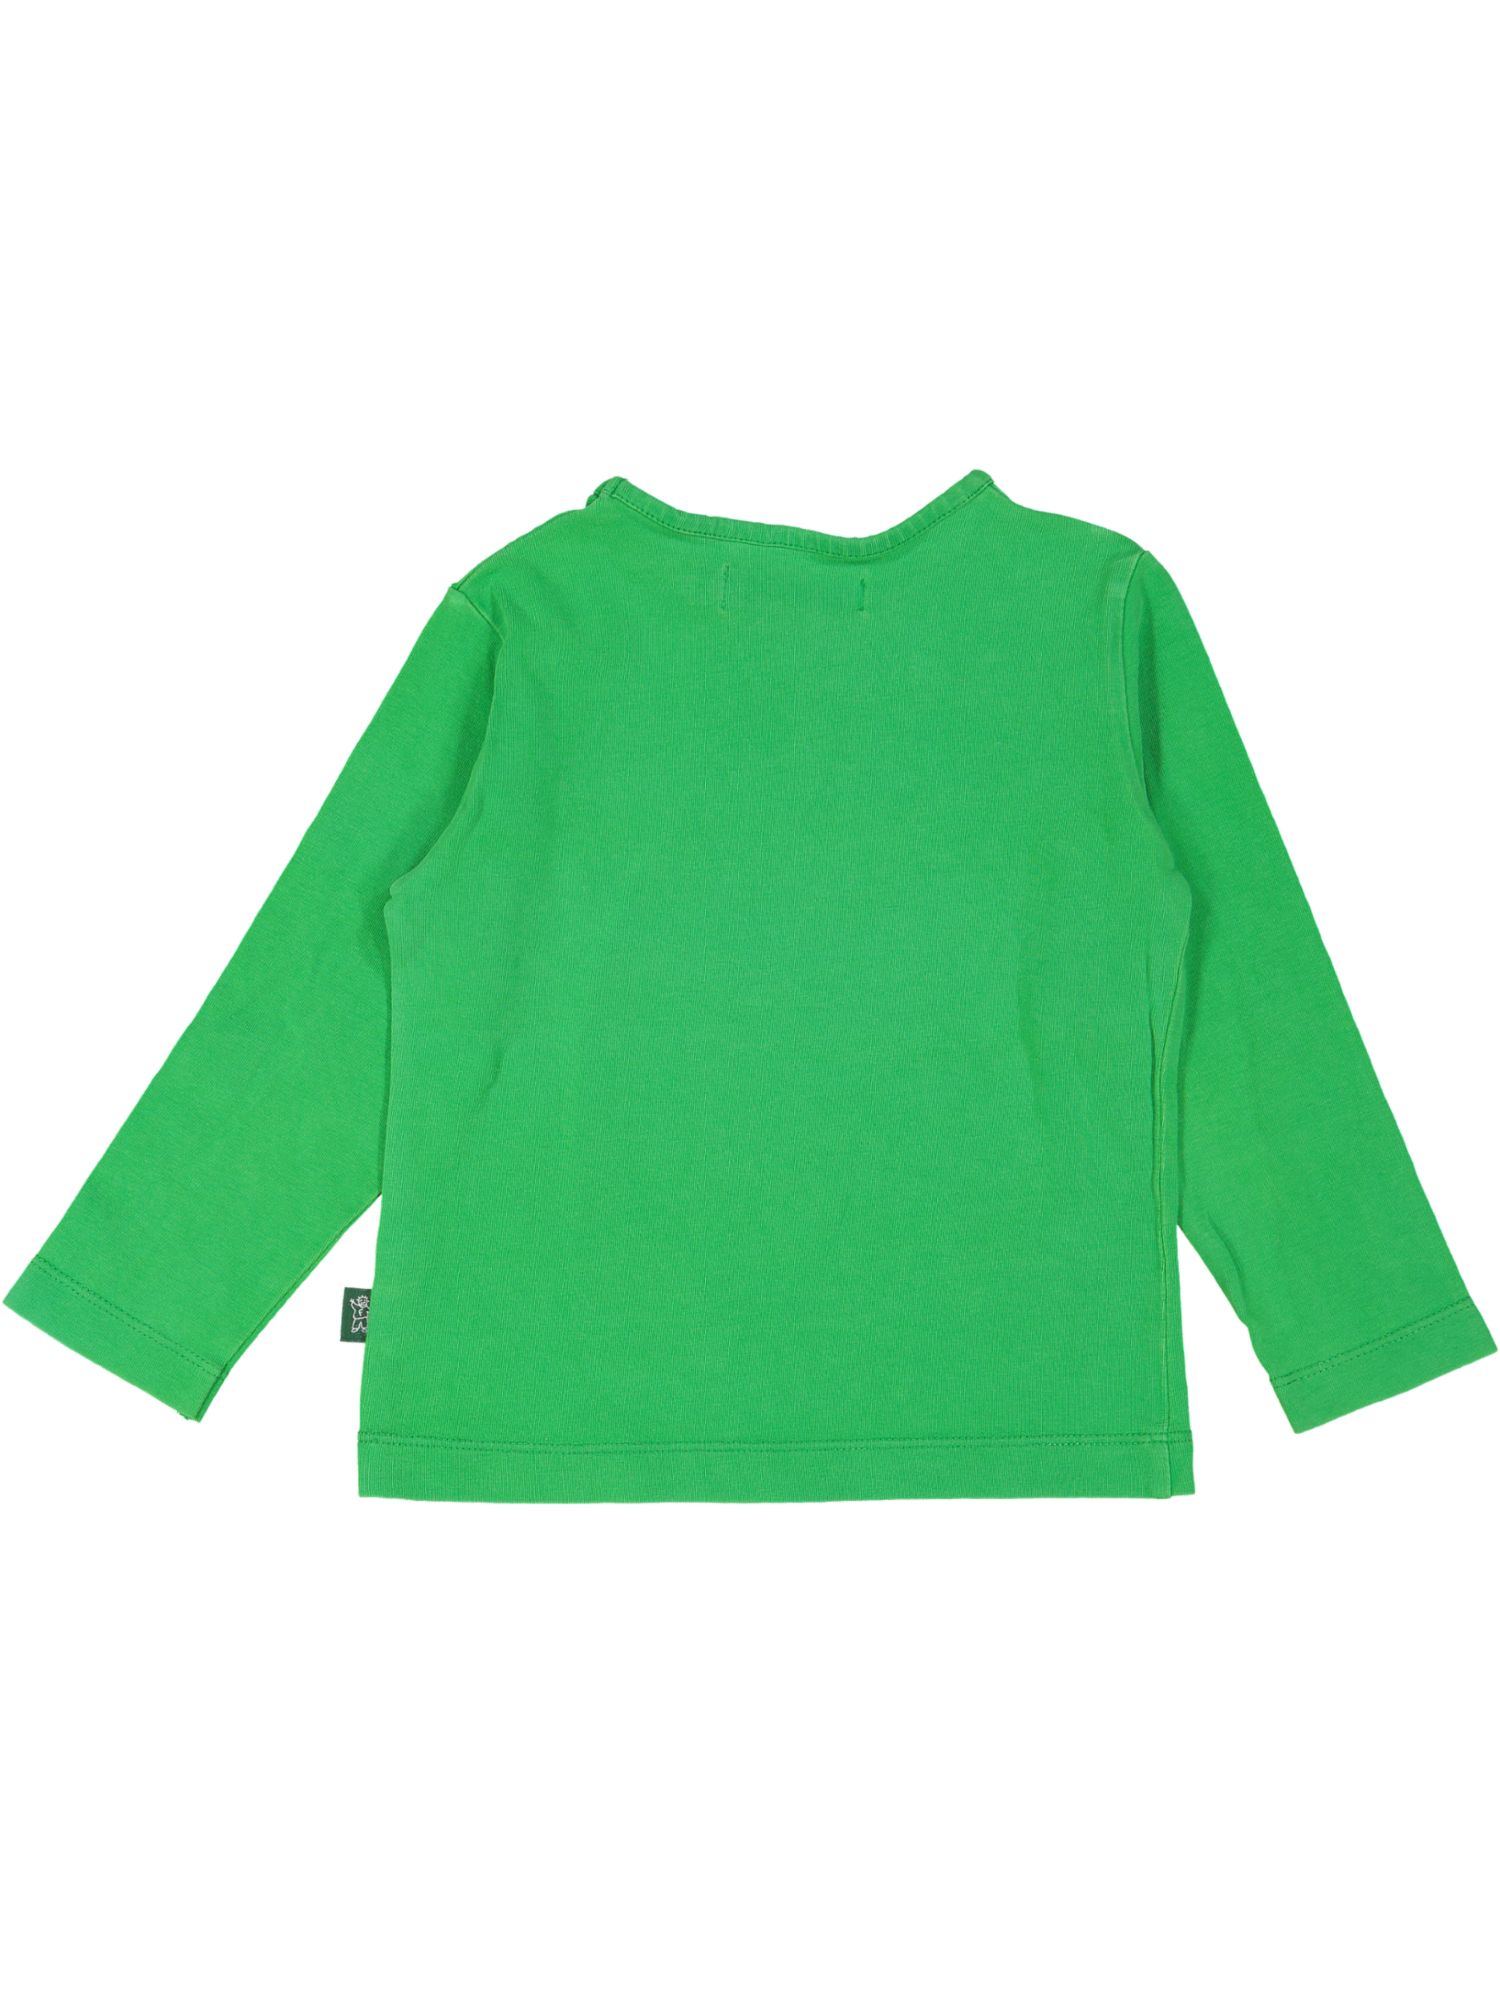 t-shirt groen meisje 02j